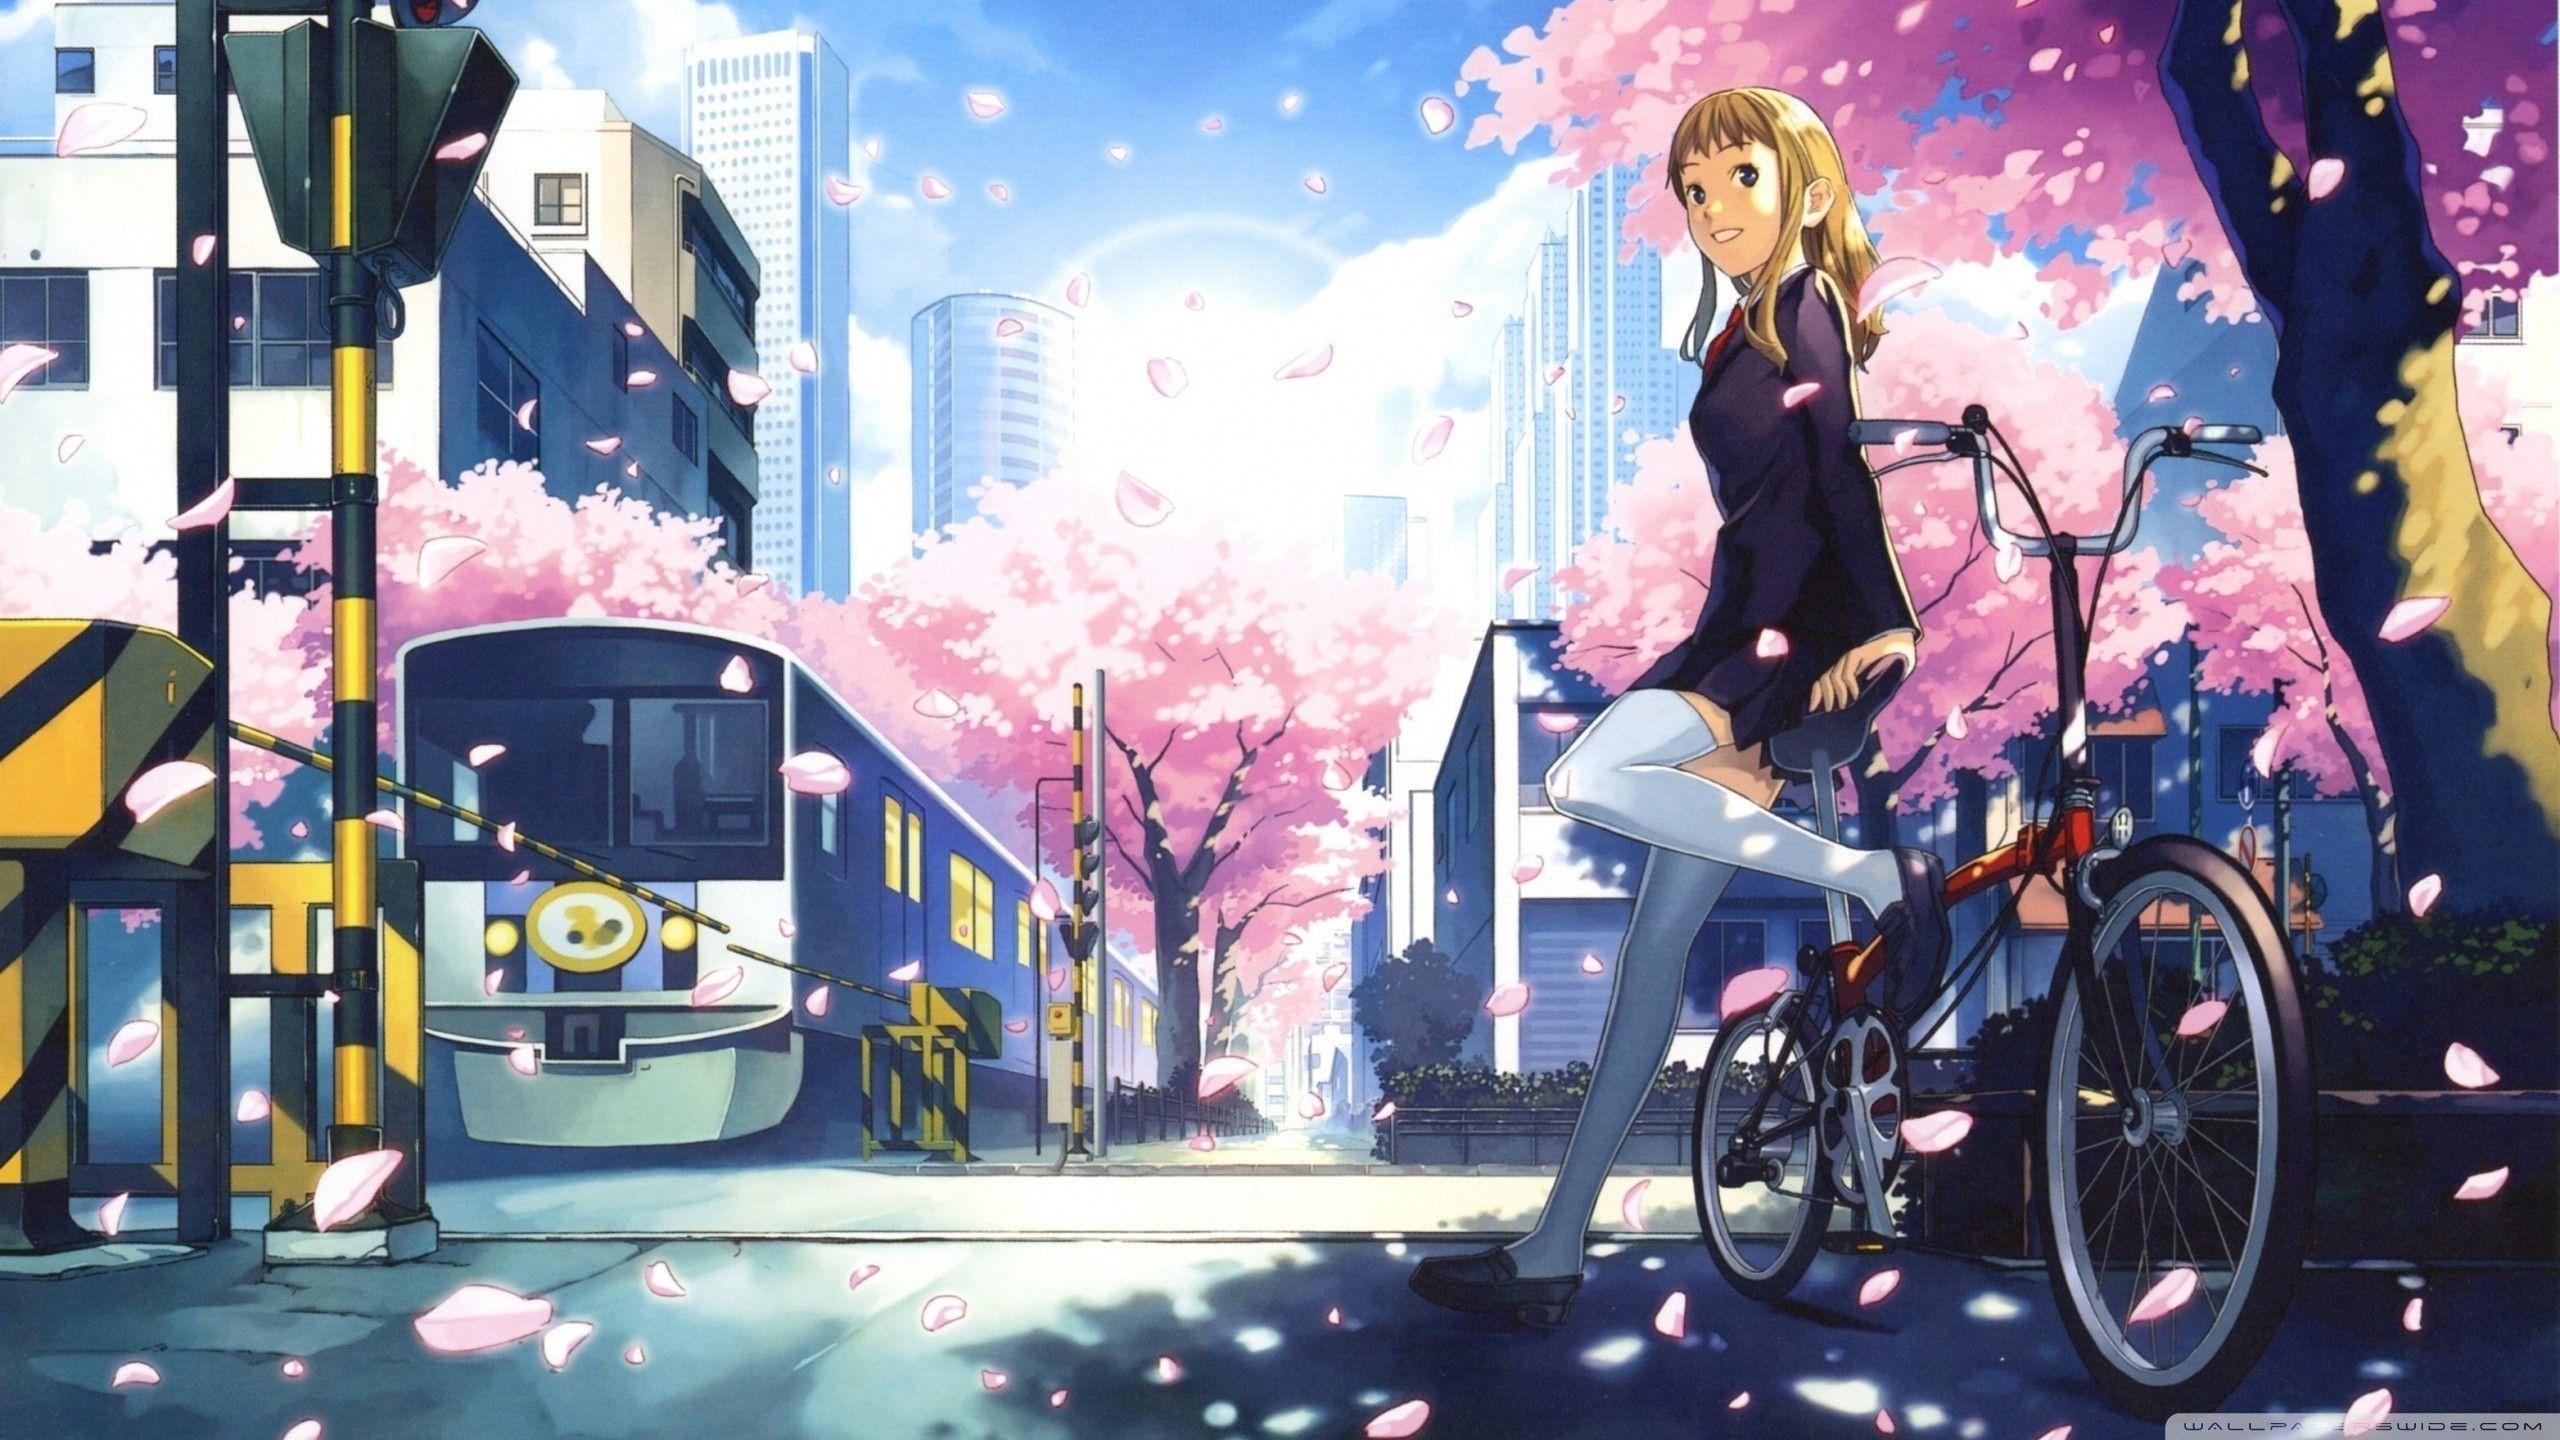 Aesthetic Anime Desktop Wallpaper Free Aesthetic